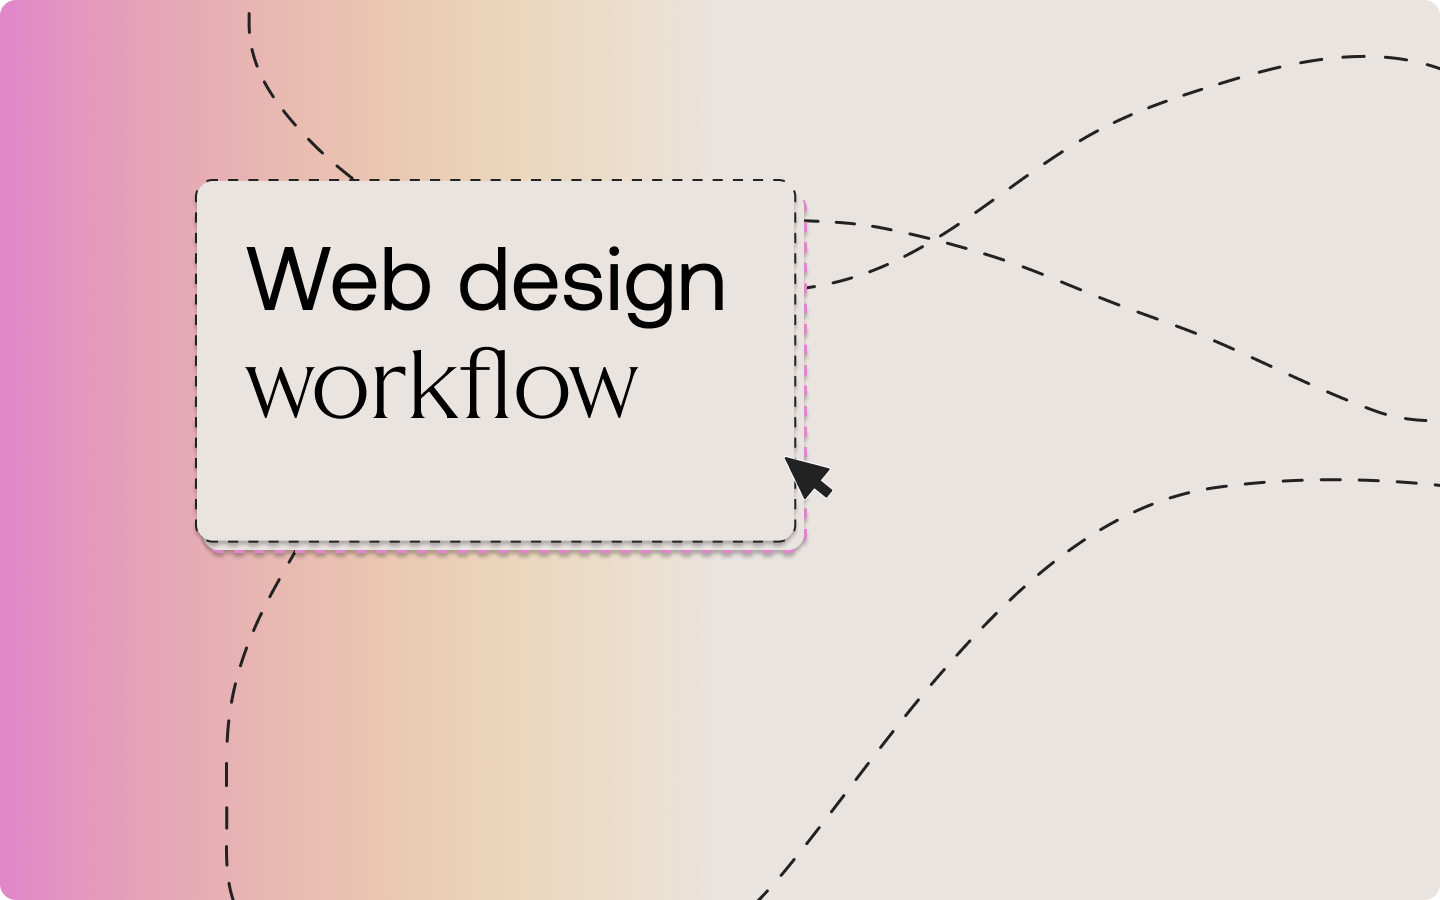 Web design workflow